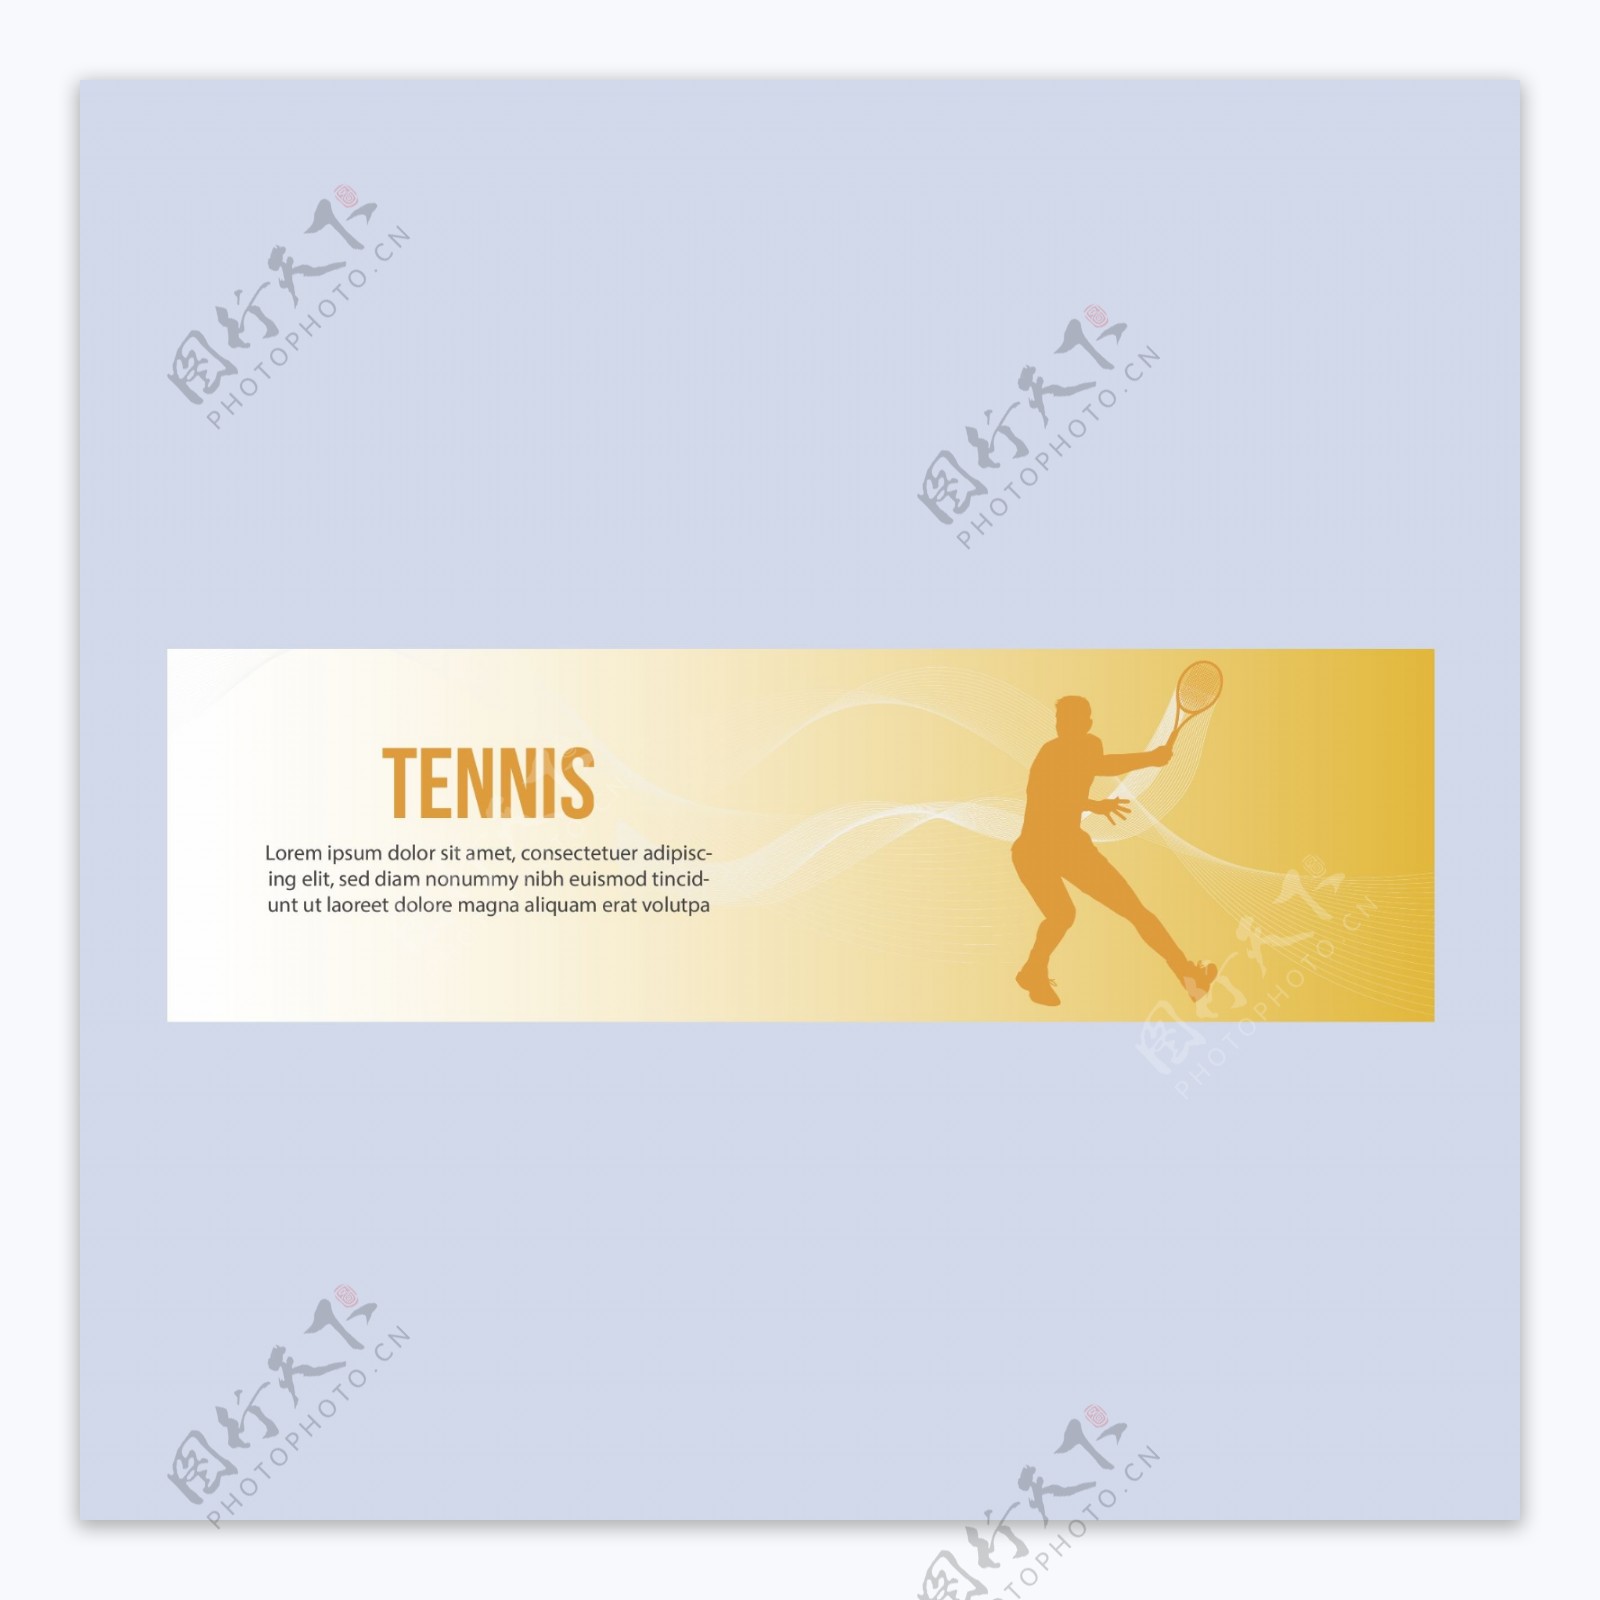 网球比赛培训俱乐部横幅